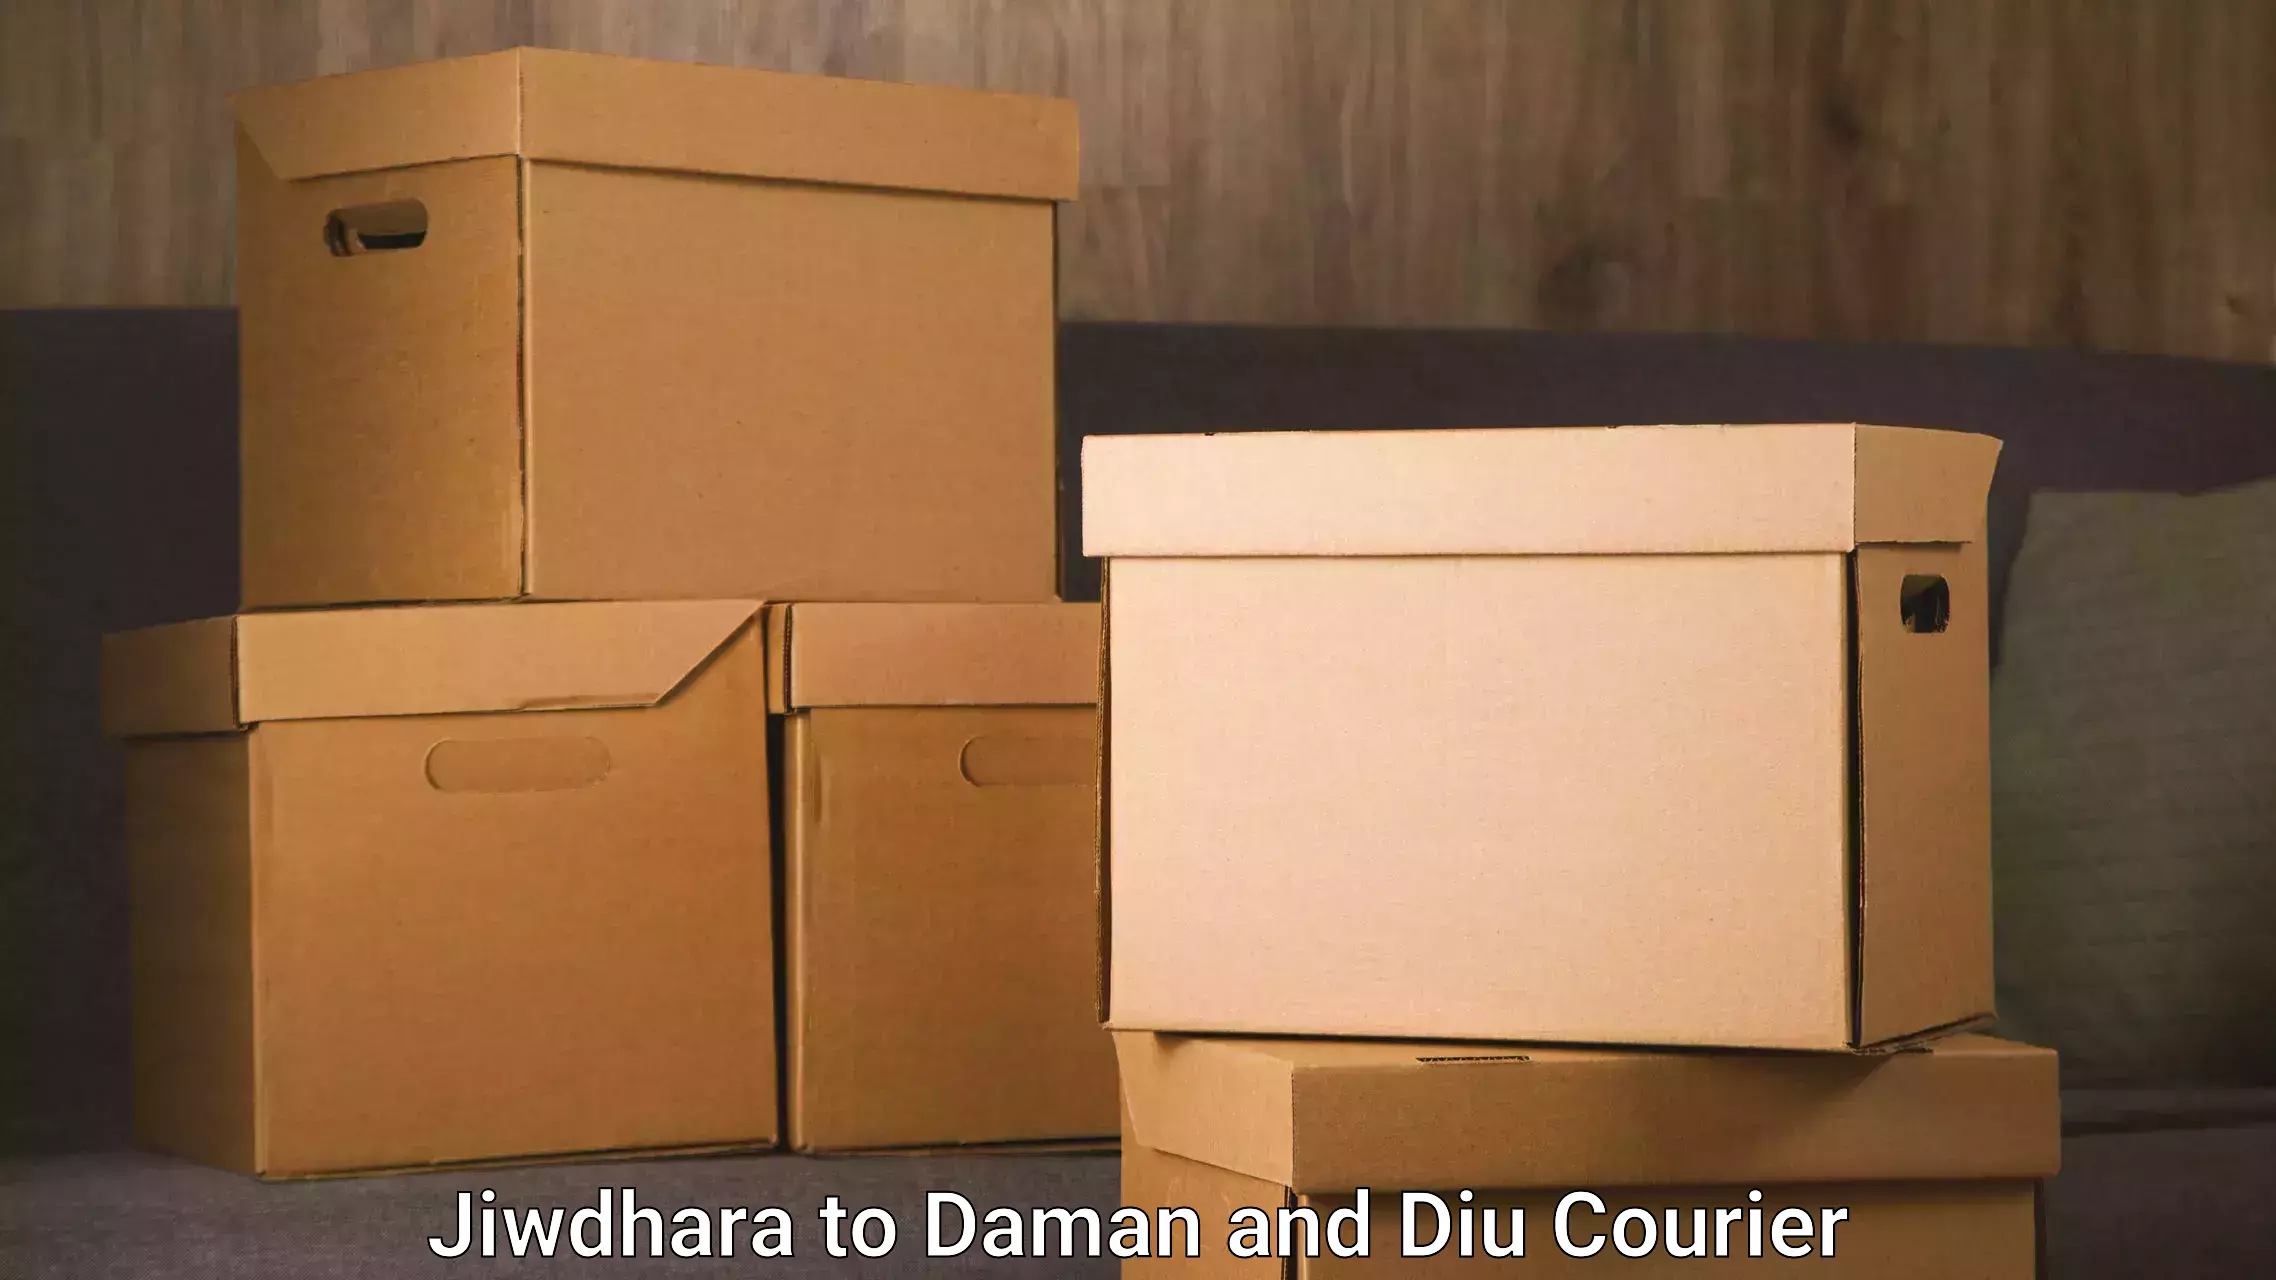 Furniture moving experts Jiwdhara to Diu